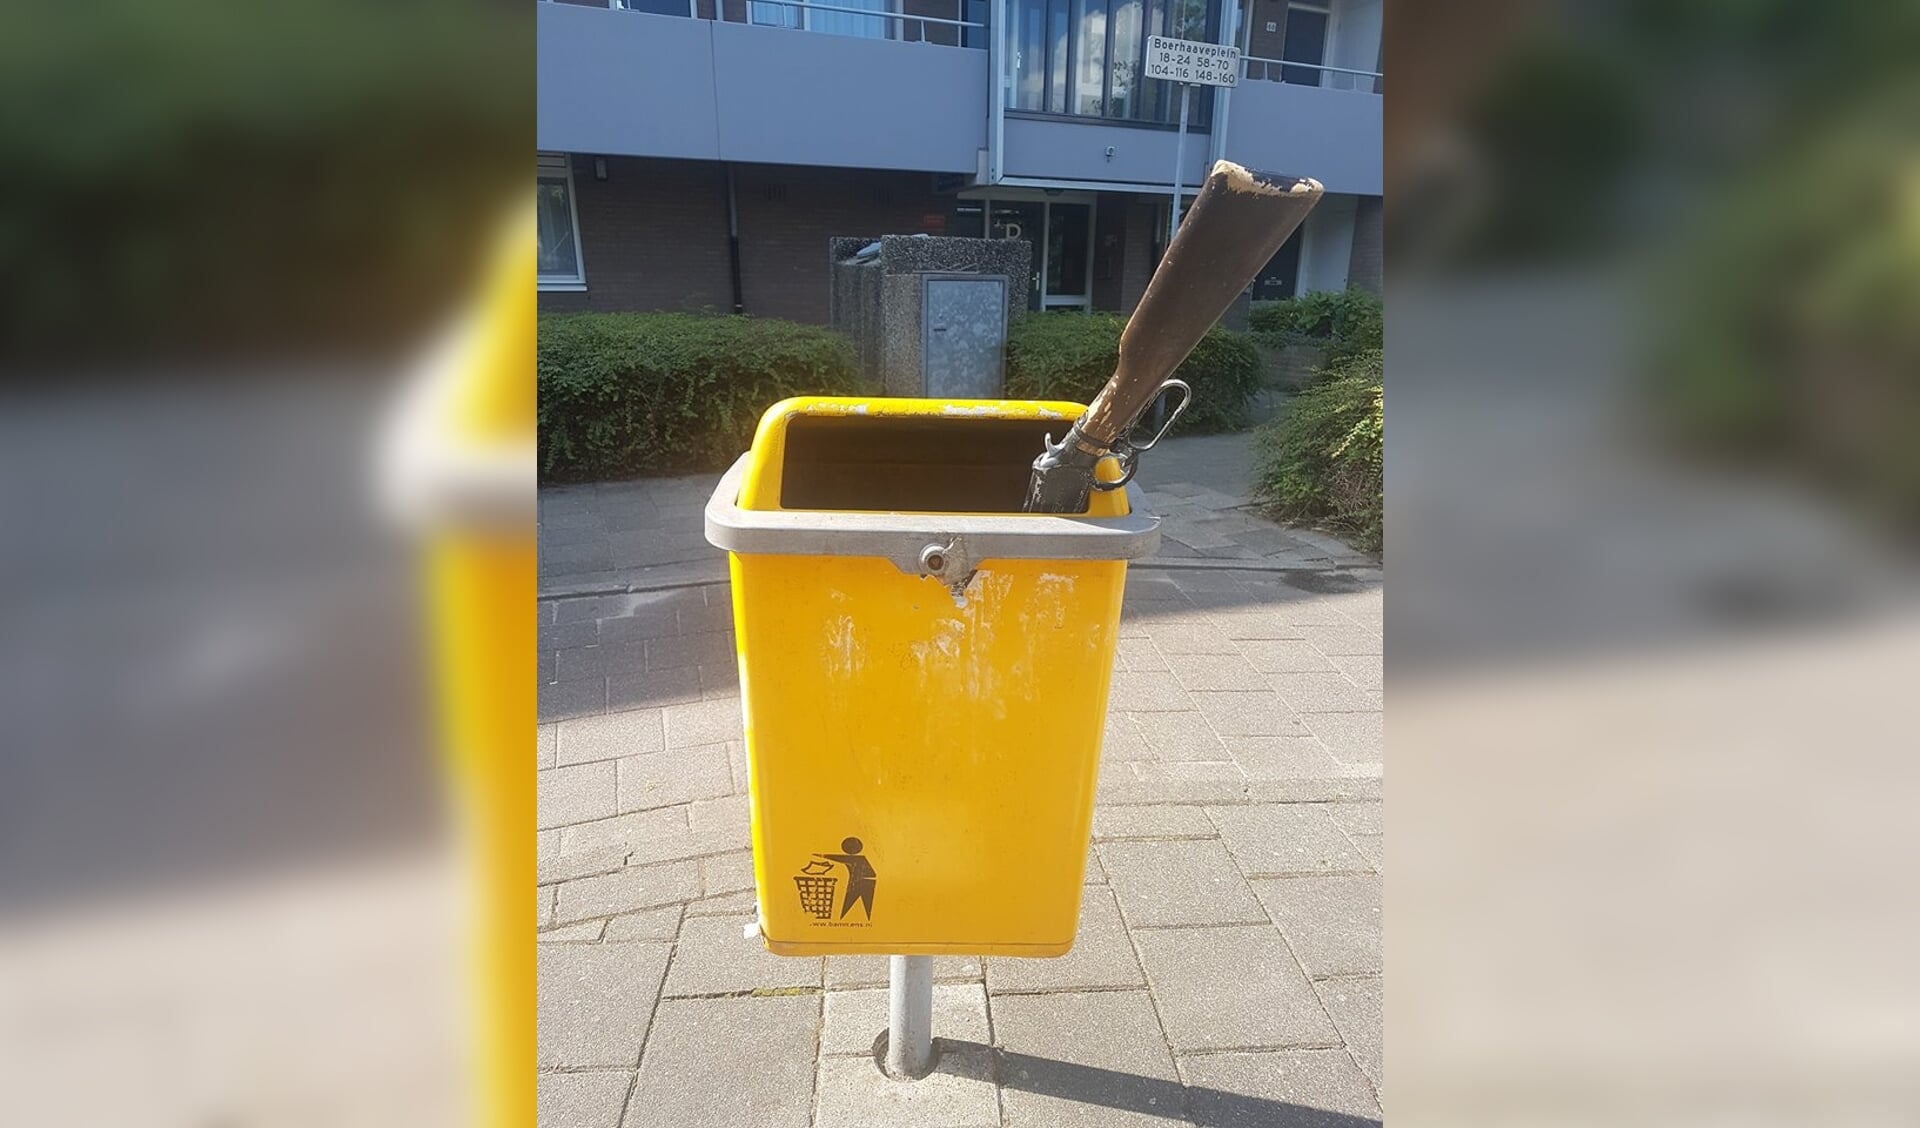 Het wapen in de prullenbak bleek een klappertjespistool. | Foto Politie Leiden Noord - Facebook